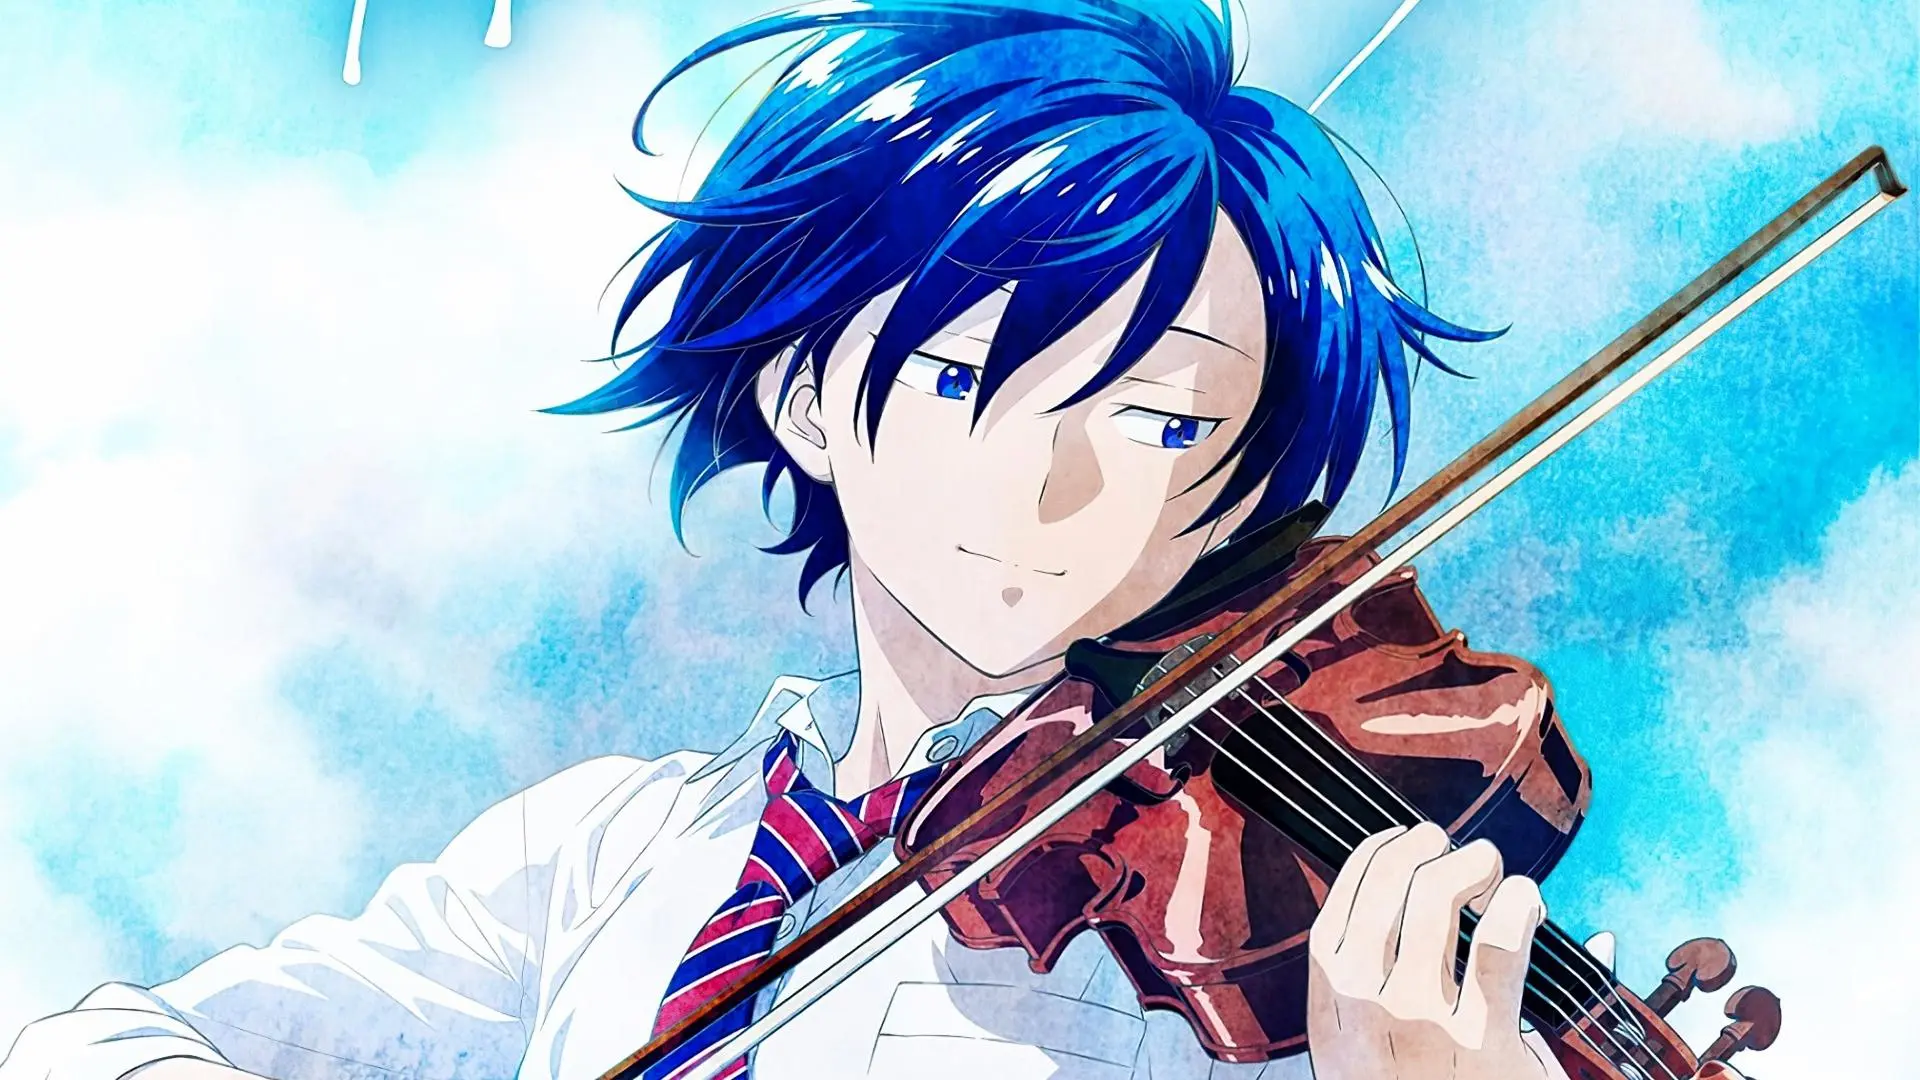 el violinista final anime - Cuál es el final de Shigatsu wa kimi no uso